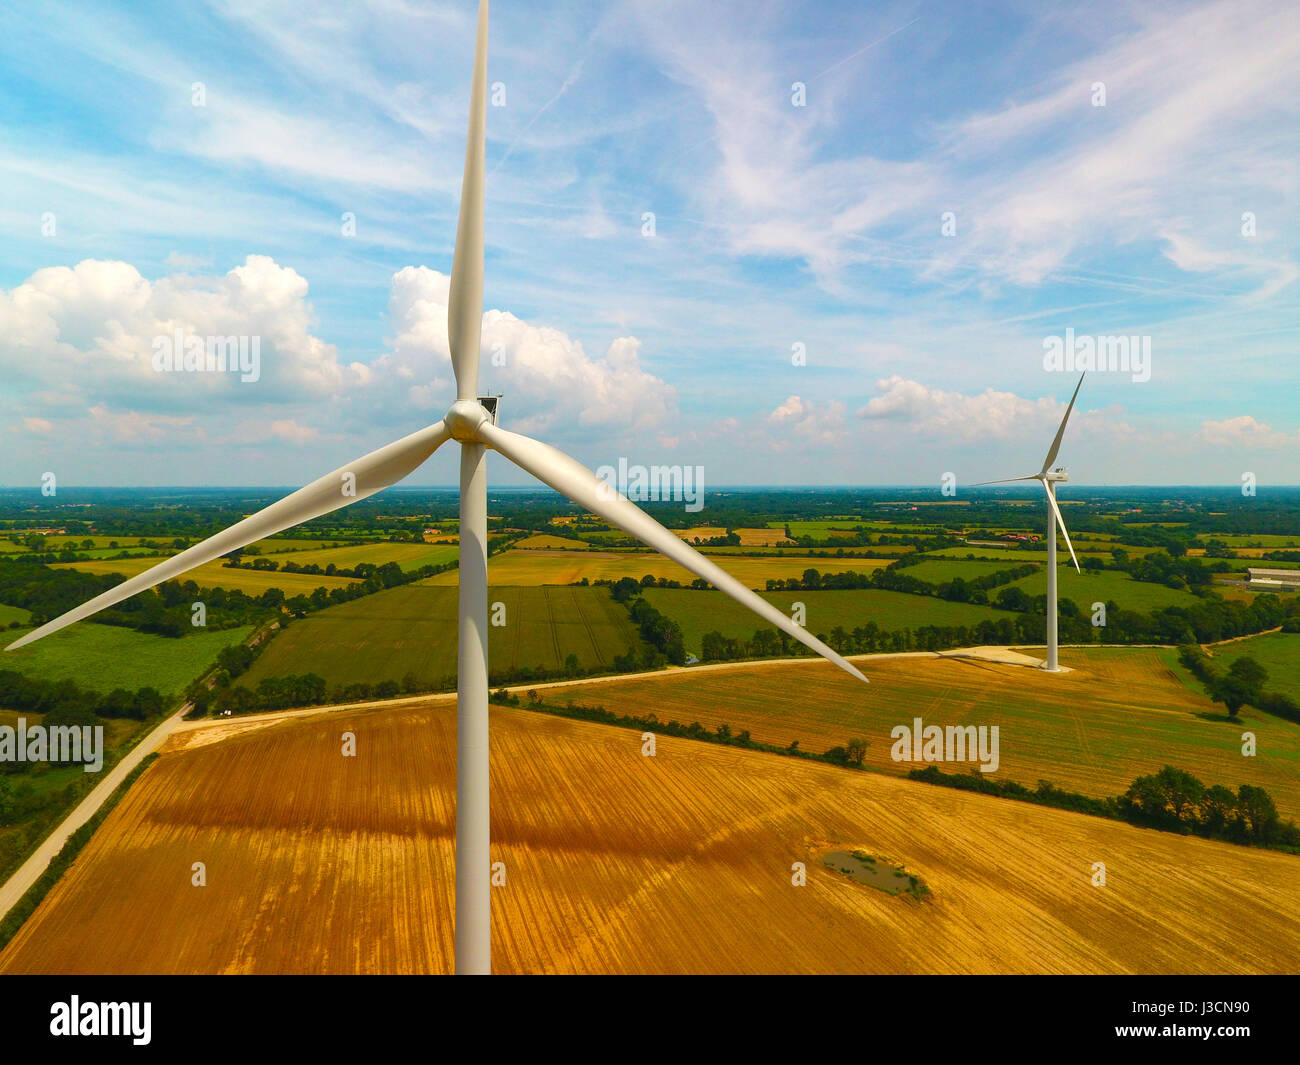 Drone photographie des éoliennes dans un champ, à proximité de Sainte Pazanne, France Banque D'Images